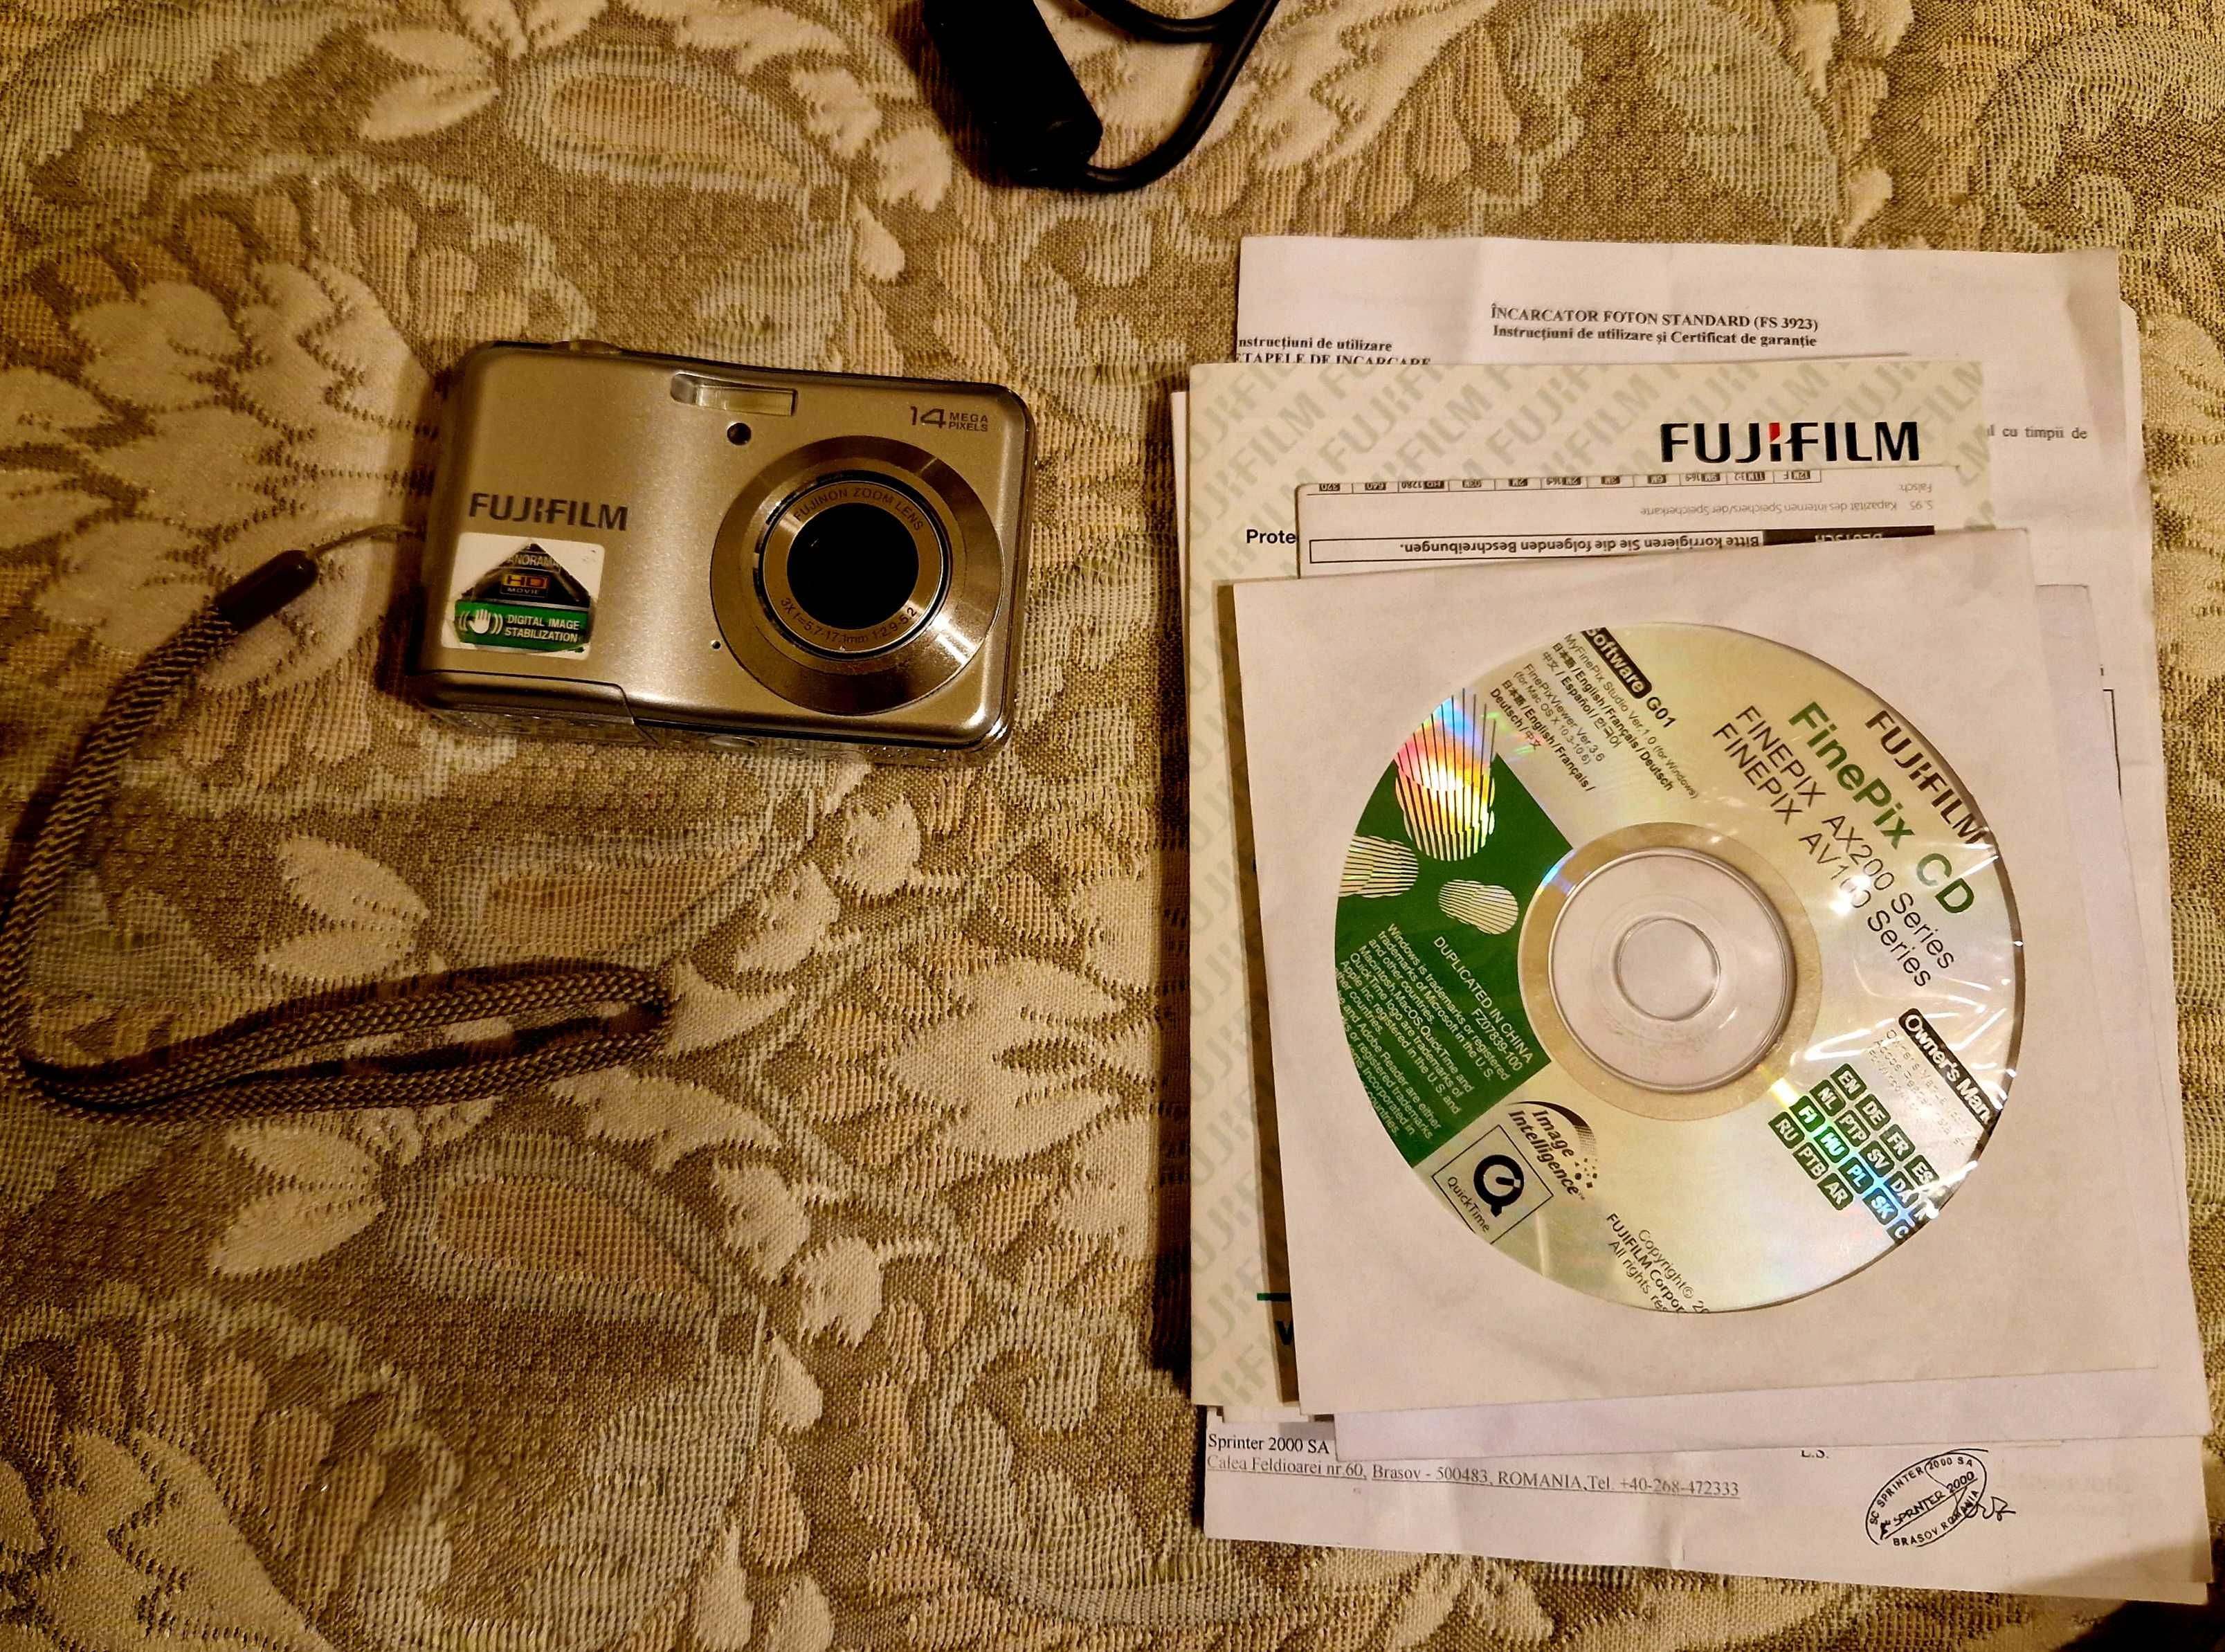 Aparat digital Fujifilm Finepix Av150 Silver